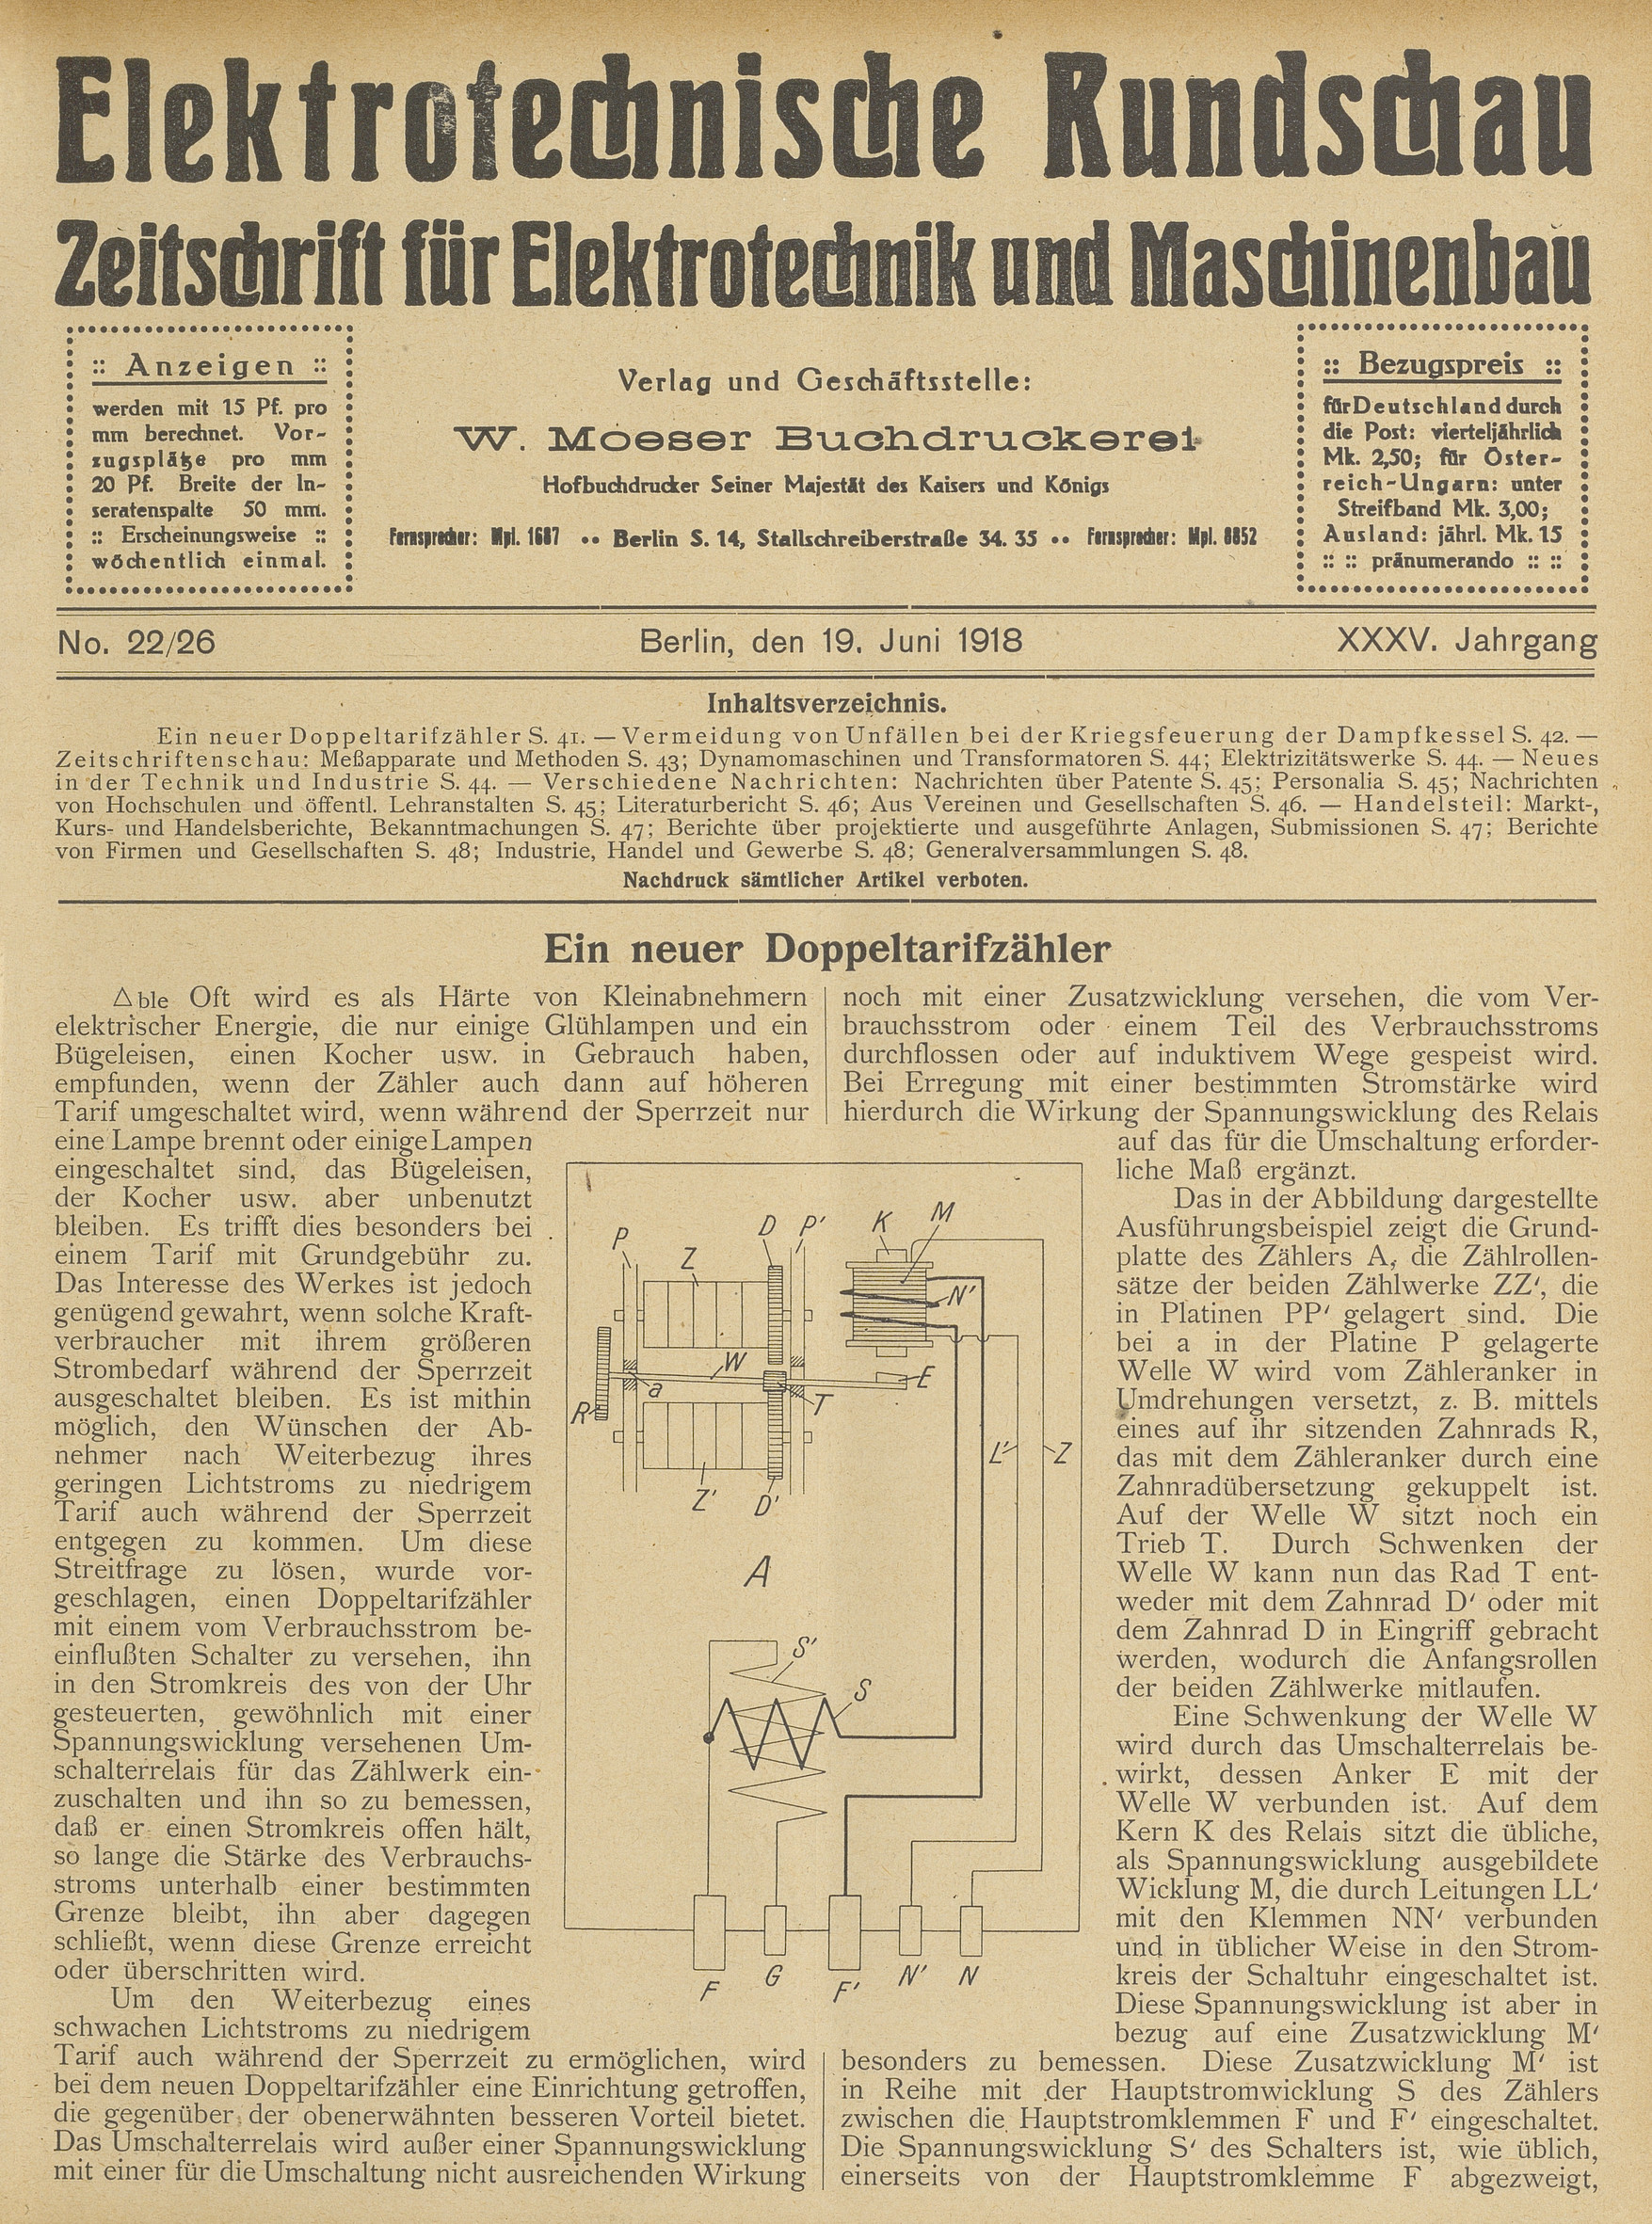 Elektrotechnische Rundschau : Zeitschrift für Elektrotechnik und Maschinenbau + Polytechnische Rundschau, No. 22/26, XXXV. Jahrgang